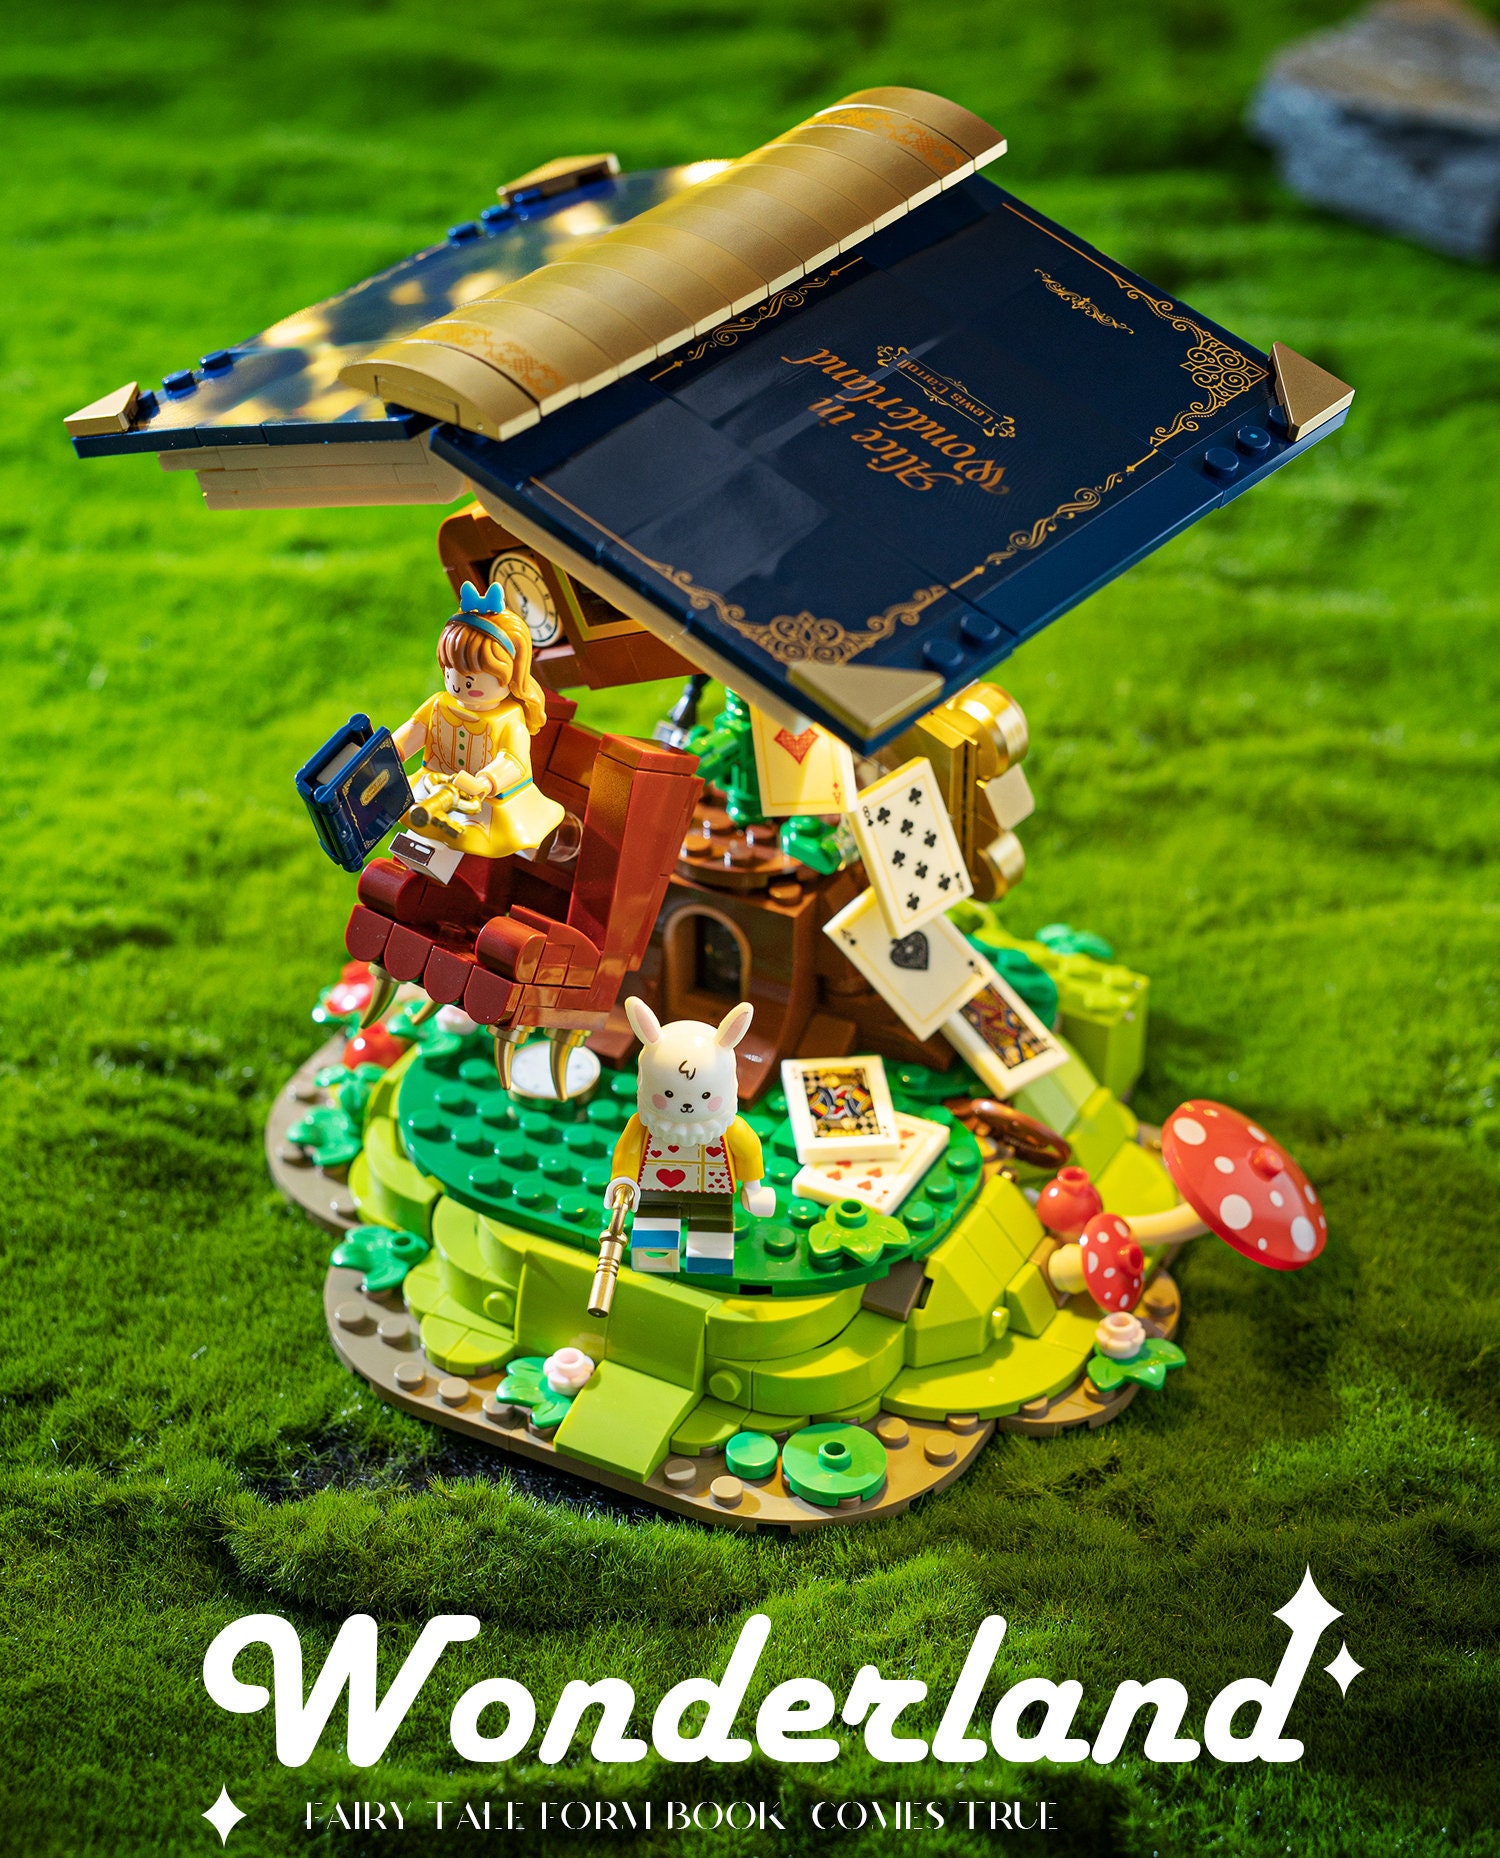 LEGO Alice in Wonderland Collection : r/aliceinwonderland